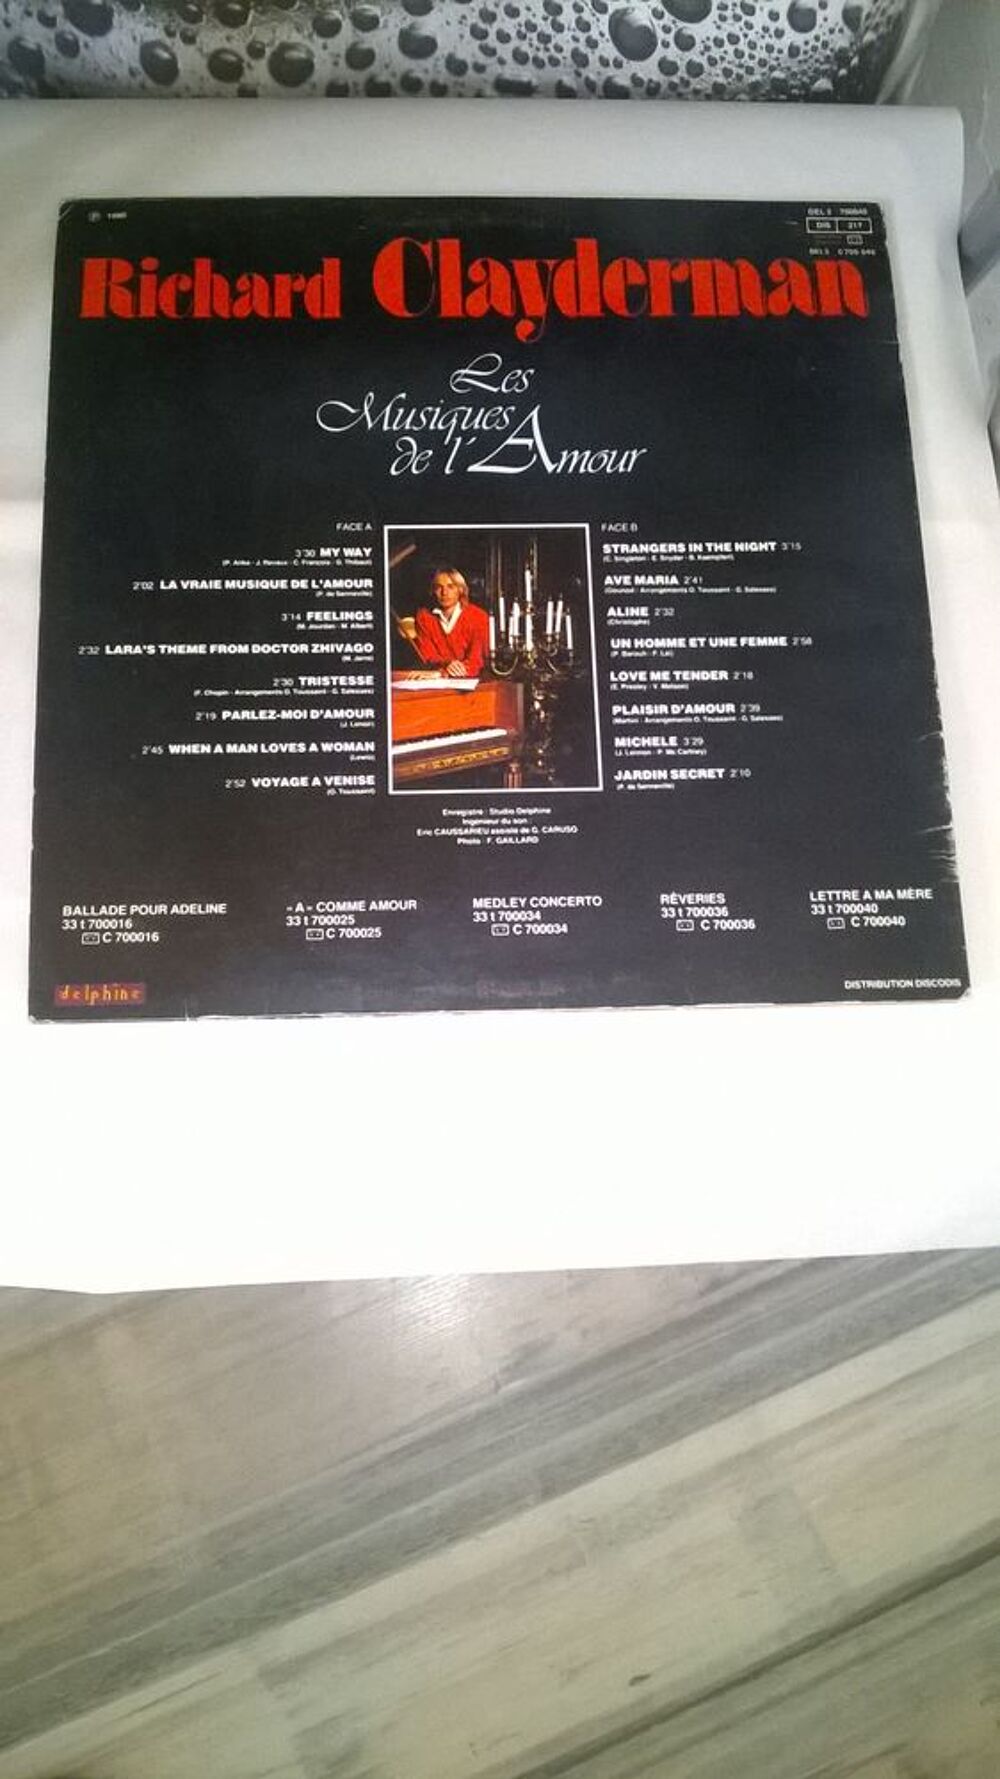 Vinyle Richard Clayderman
Les Musiques De L'Amour
1980
Ex CD et vinyles